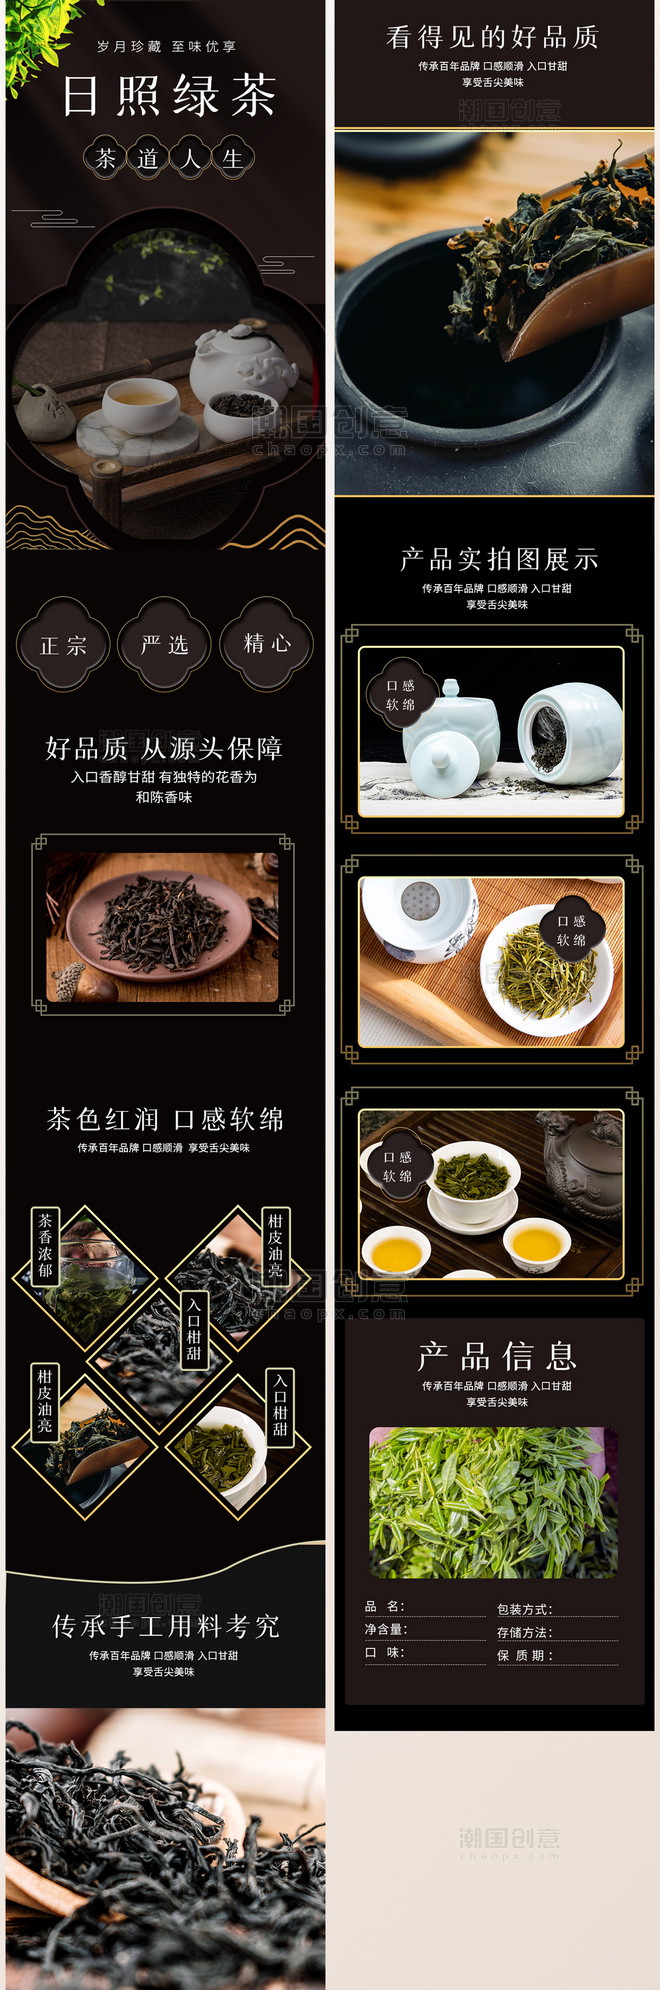 茶至味优享绿茶茶叶餐饮黑棕中国风简约电商详情页